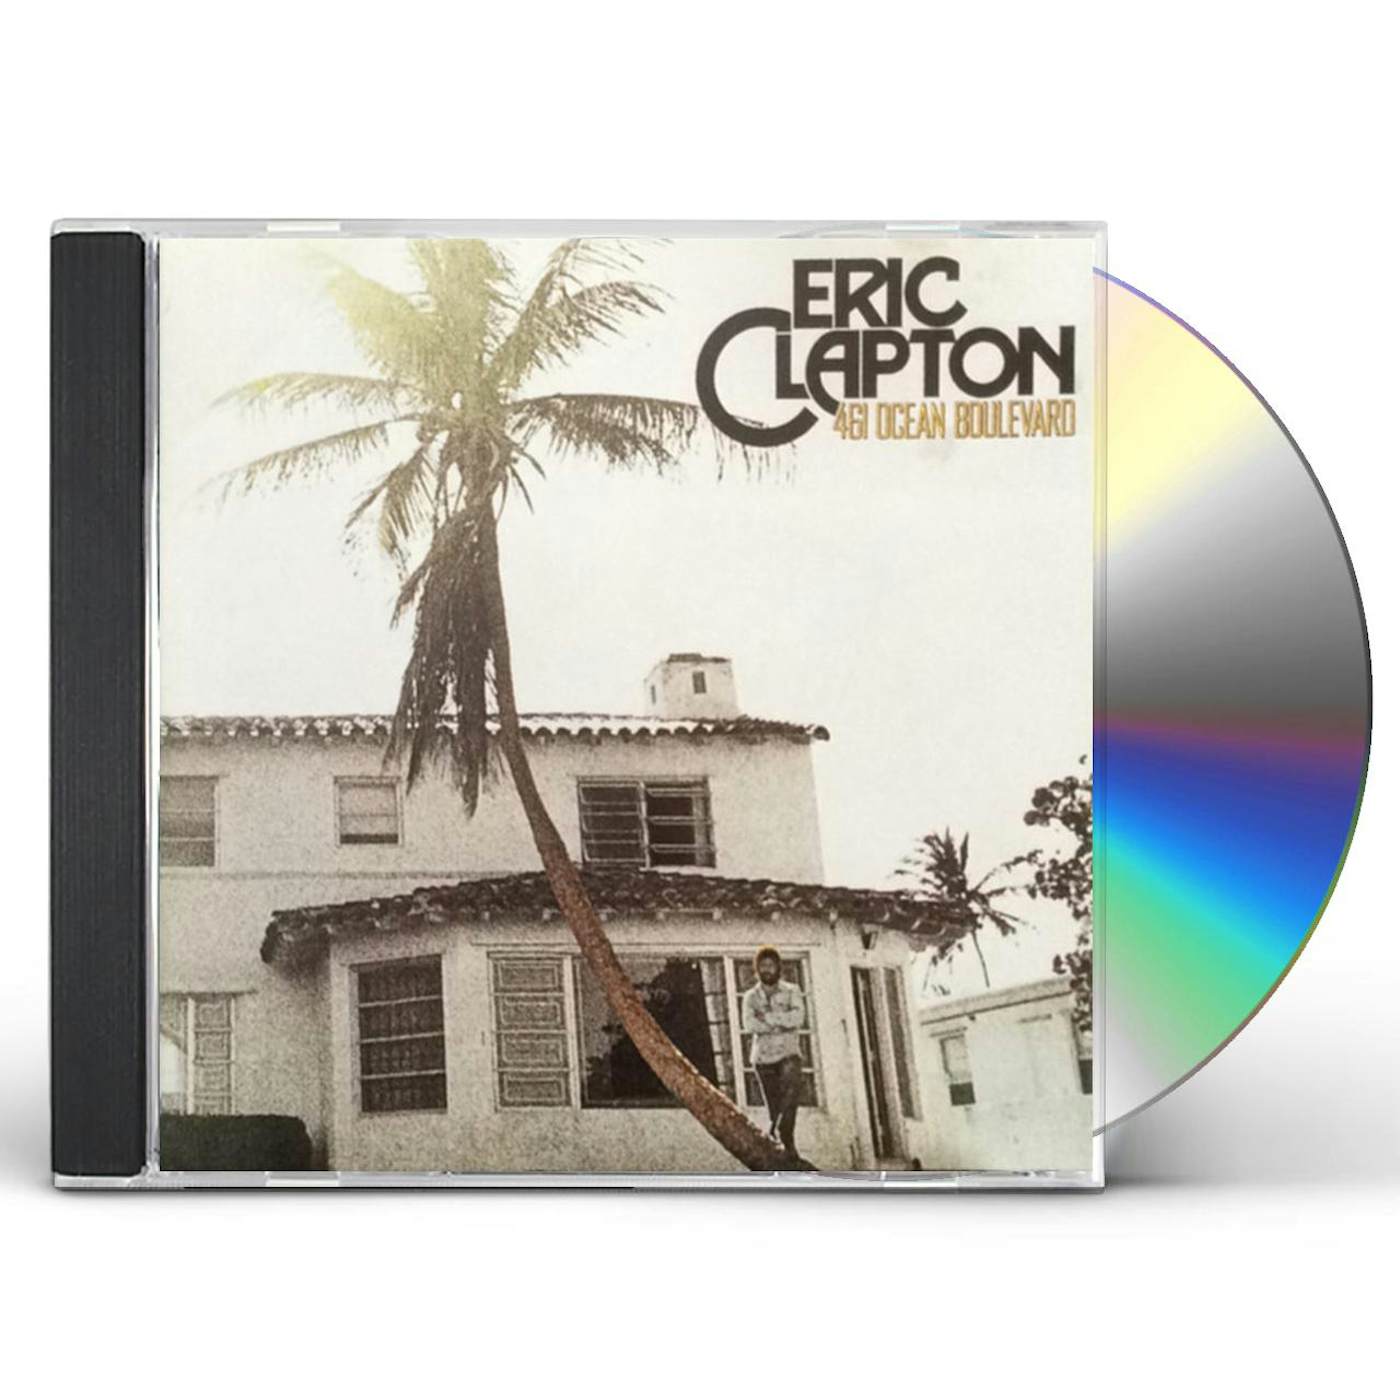 Eric Clapton 461 OCEAN BOULEVARD CD